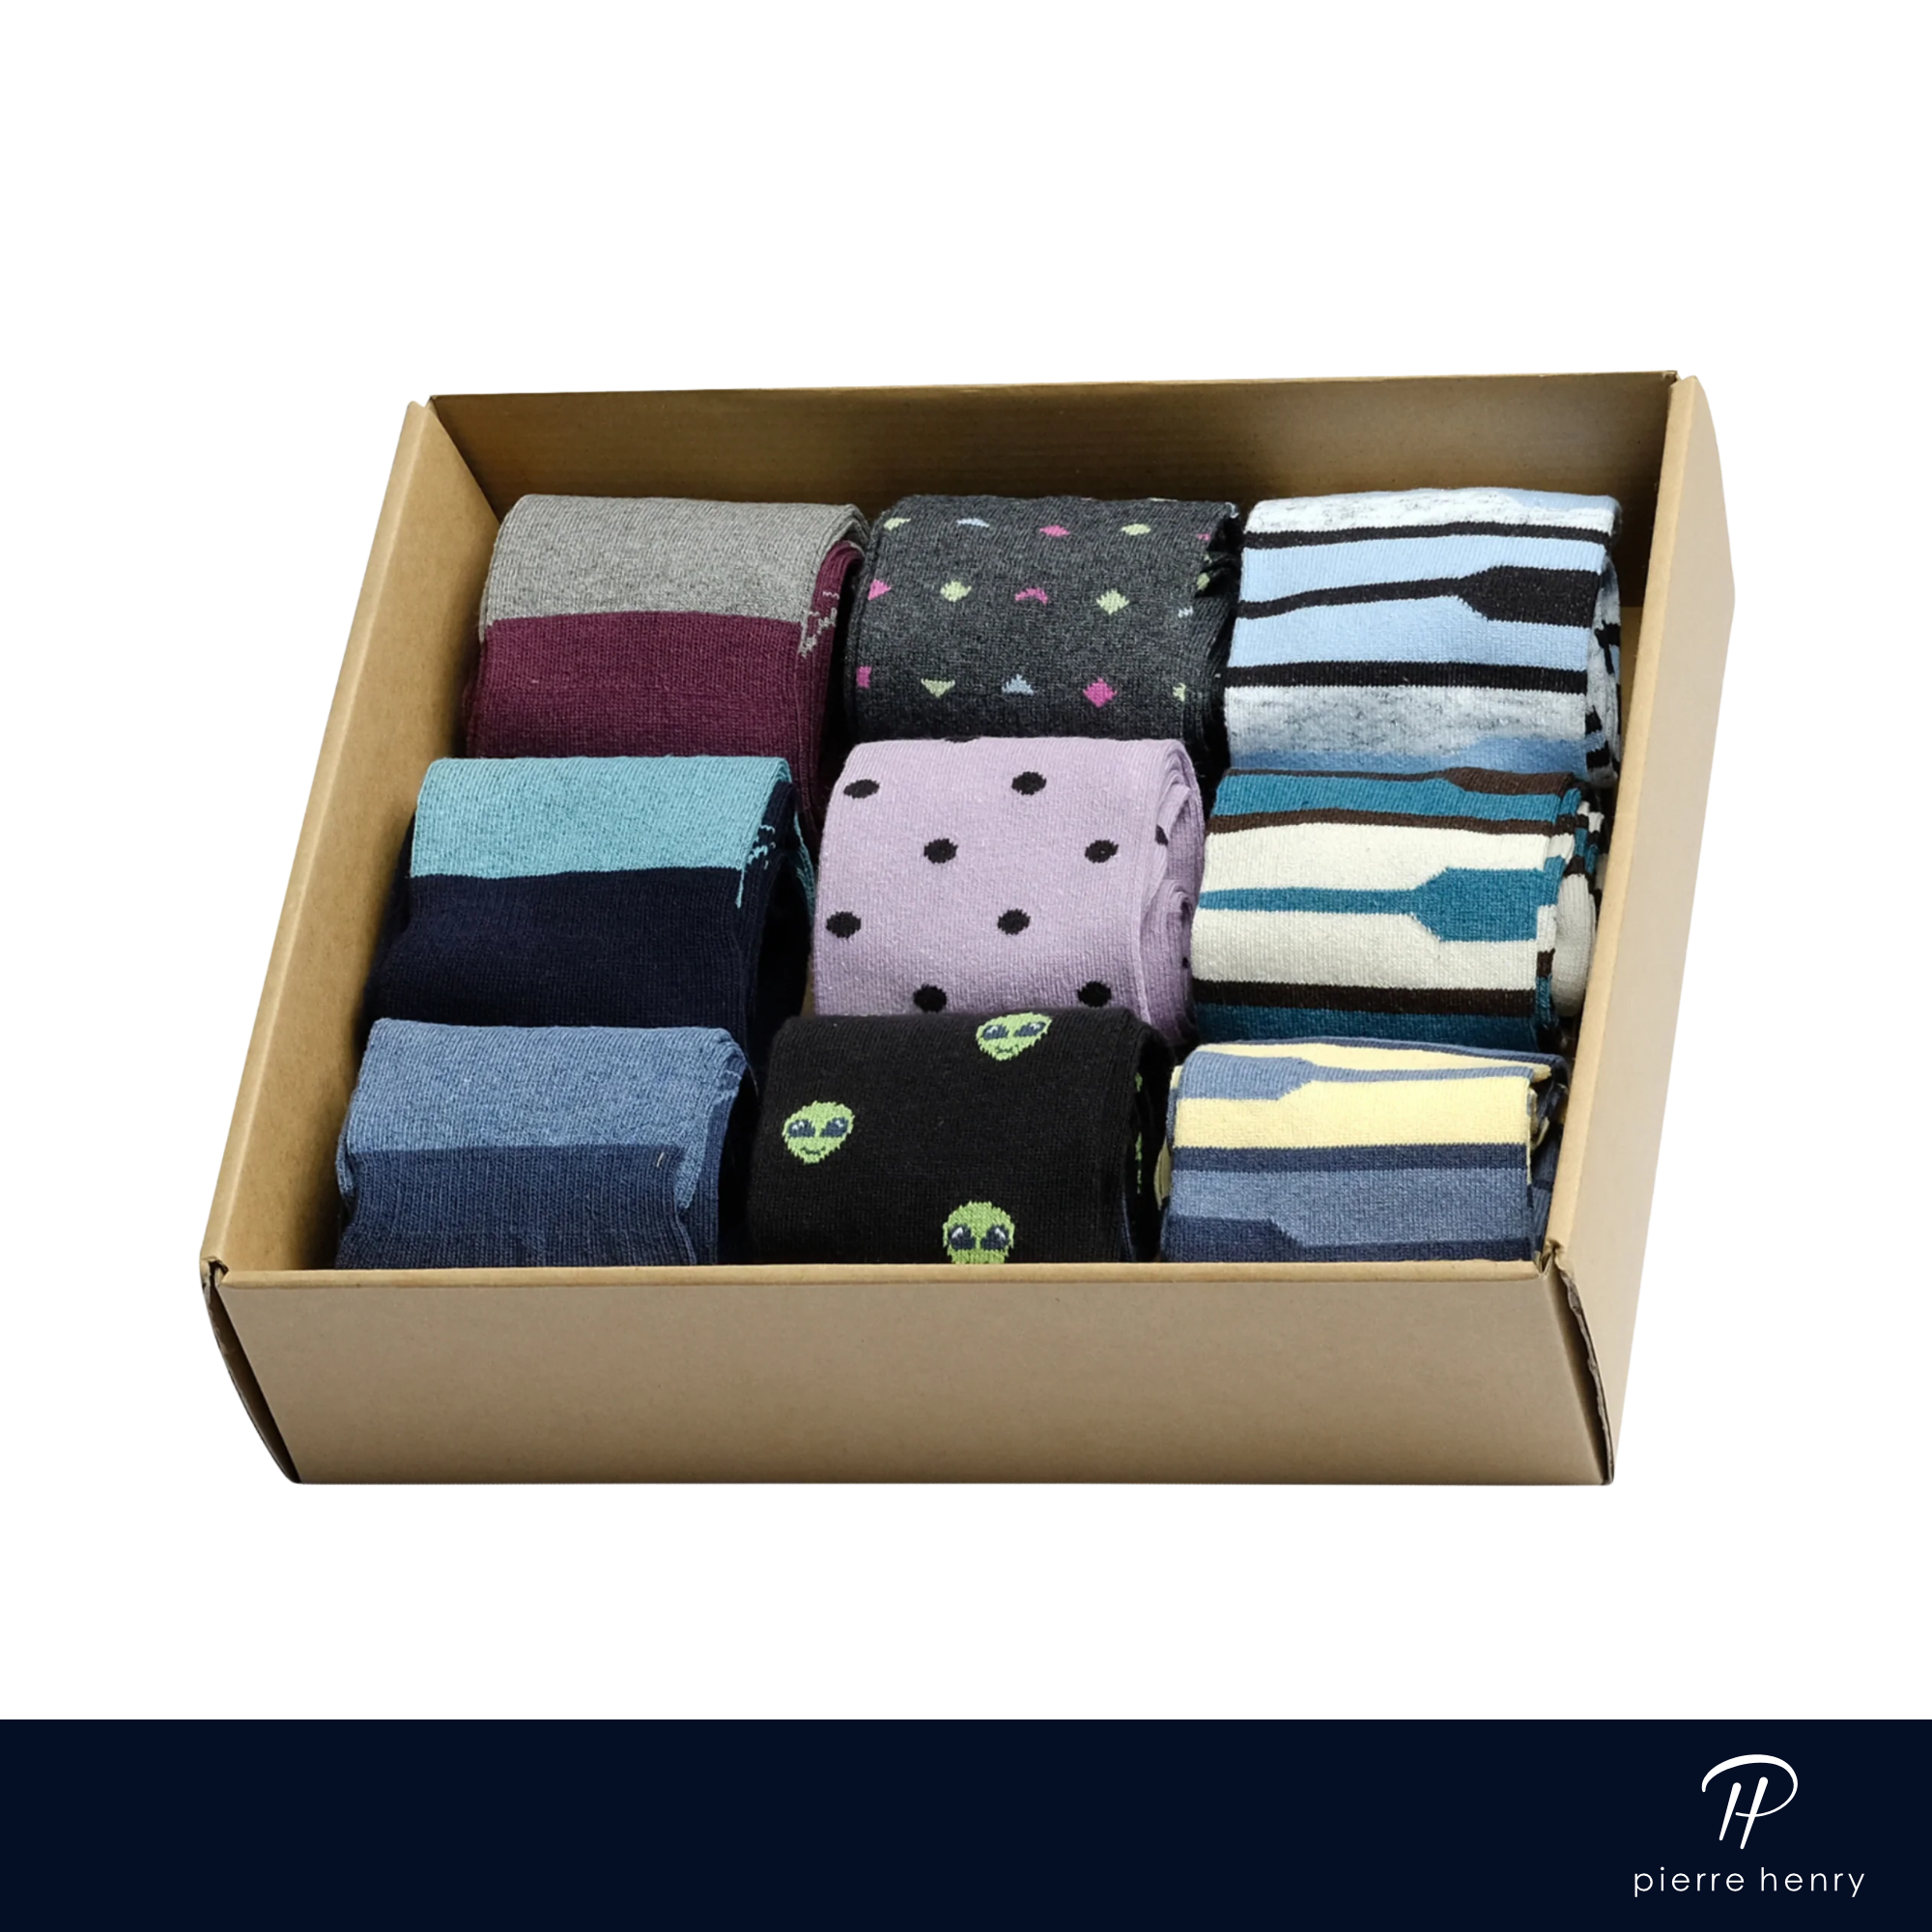 box of dress socks for men, blue dress socks, black dress socks, burgundy dress socks, patterned and lined dress socks